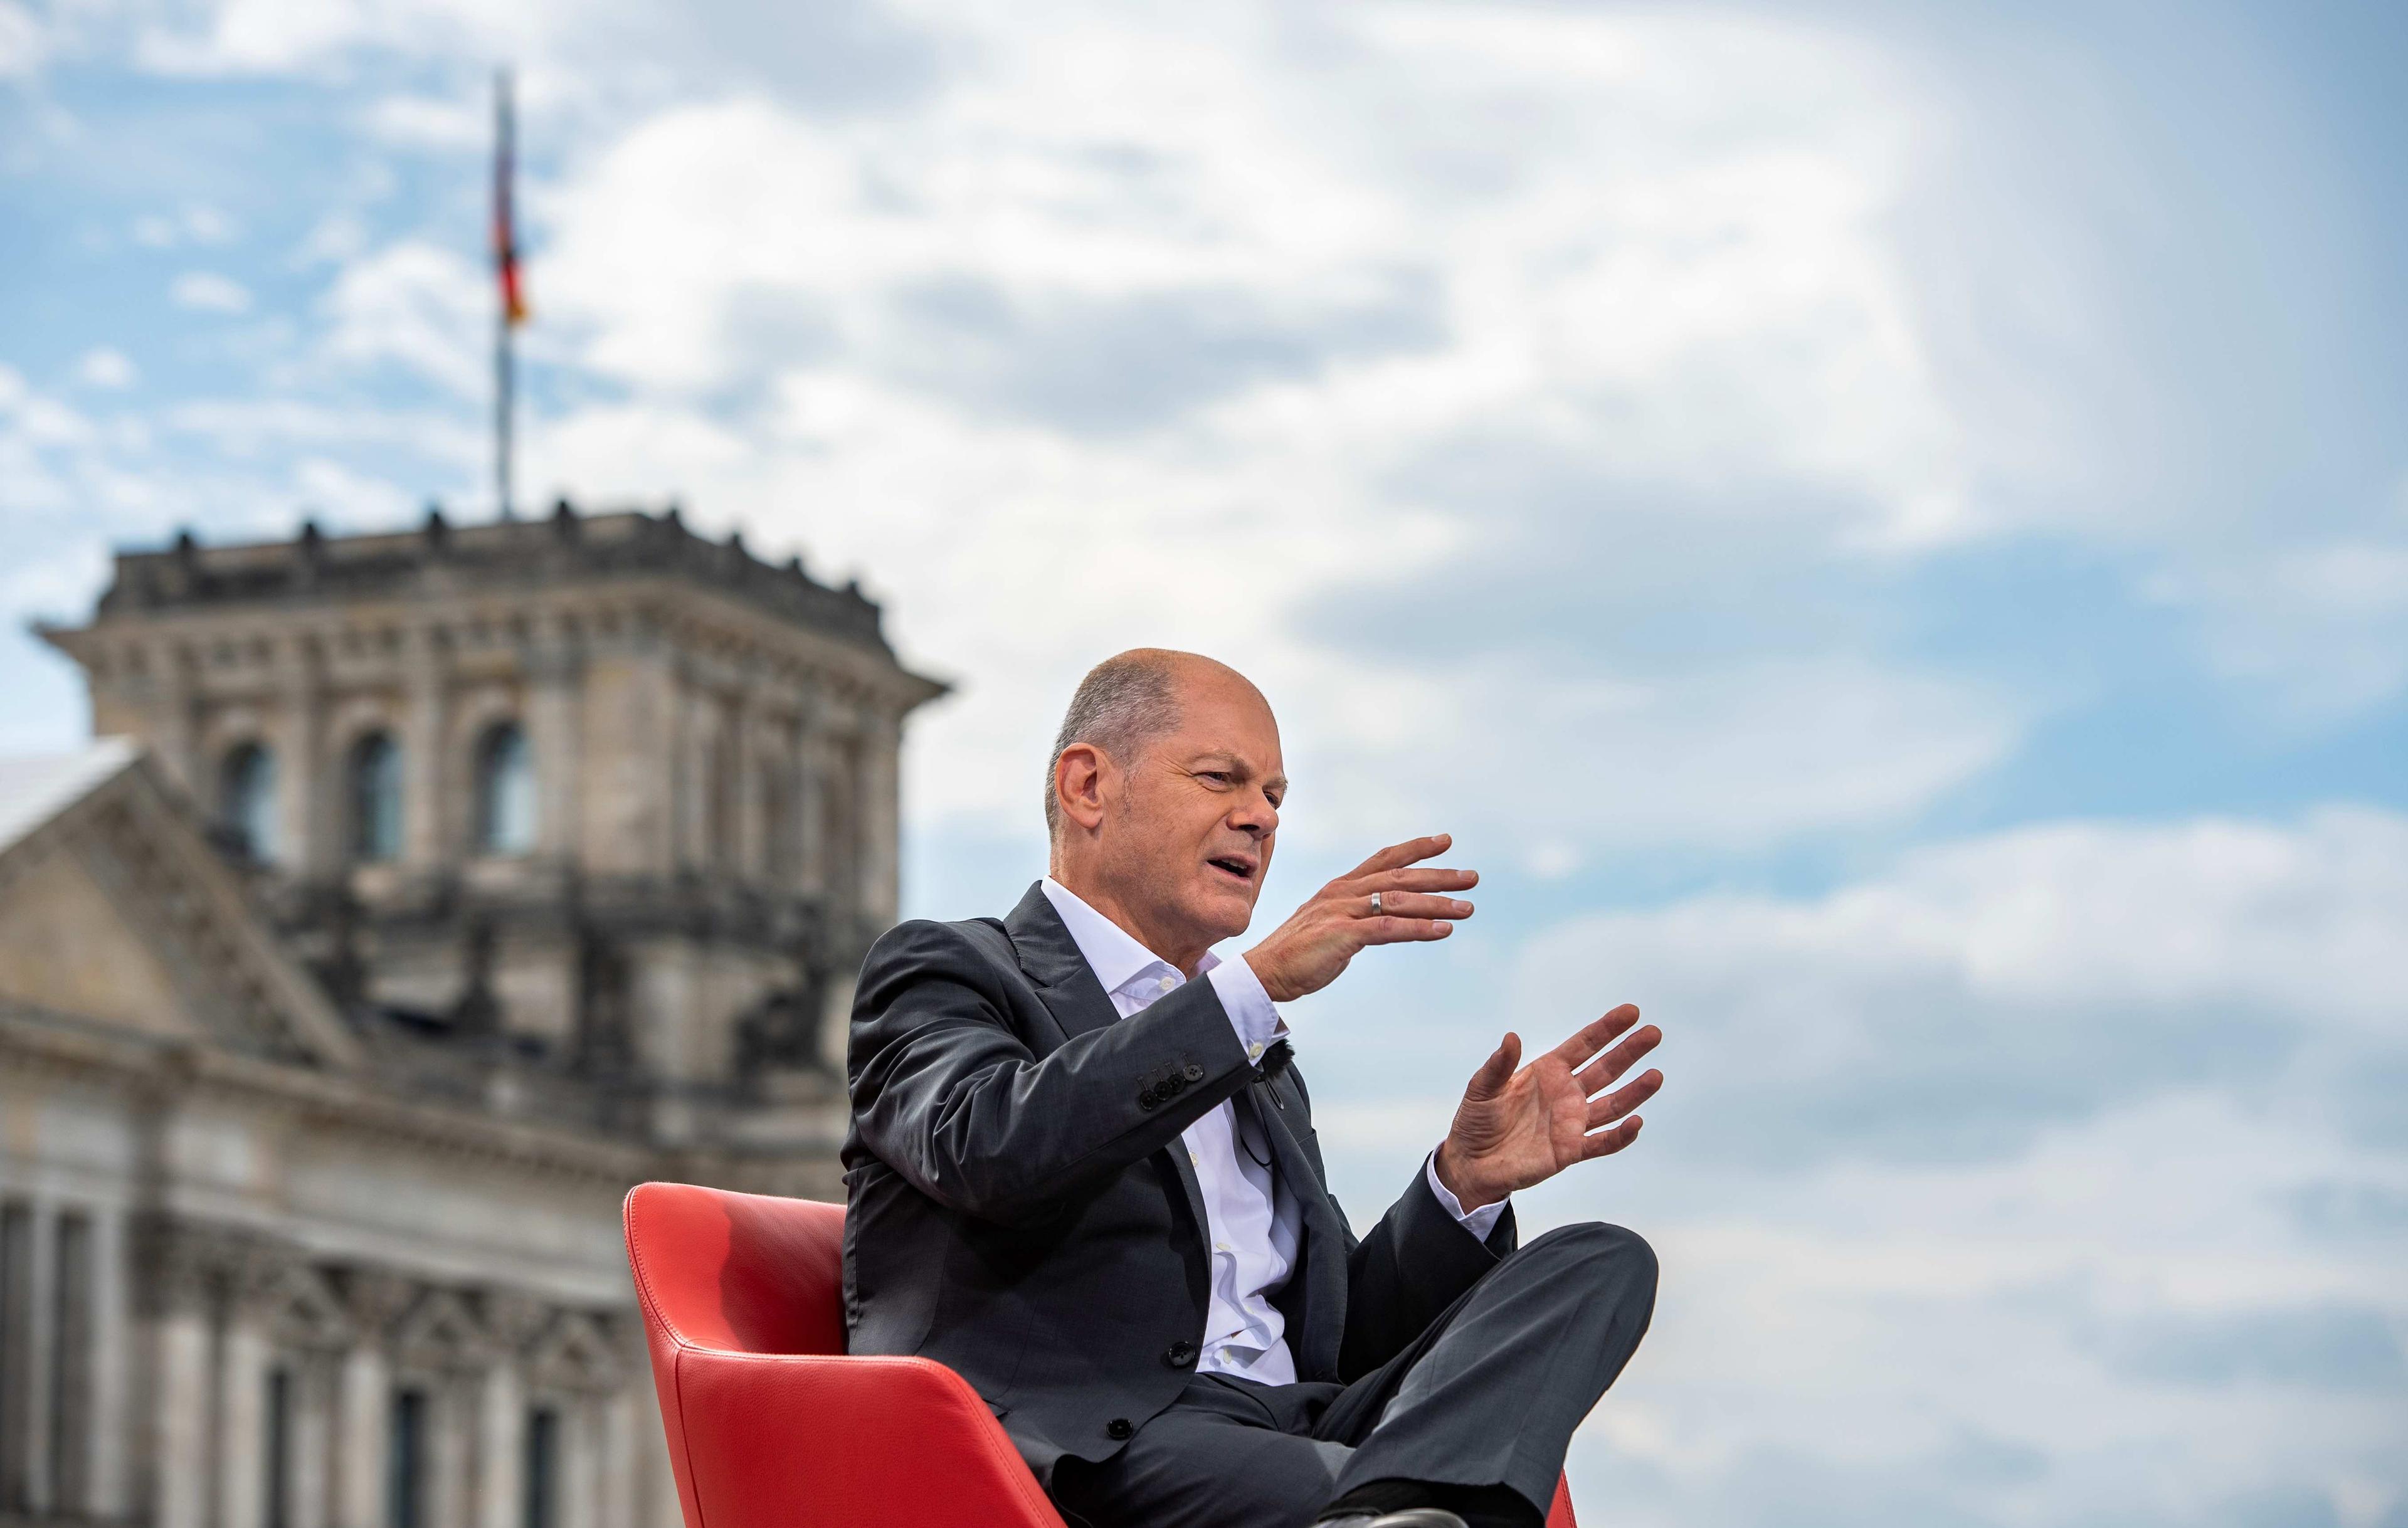 Kandydat na kanclerza Niemiec Olaf Scholz udziela wywiadu, siedząc na czerwonym fotelu na tle budynku Reichstagu, siedziby Bundestagu w Berlinie. Koalicja wyborcza w Niemczech.